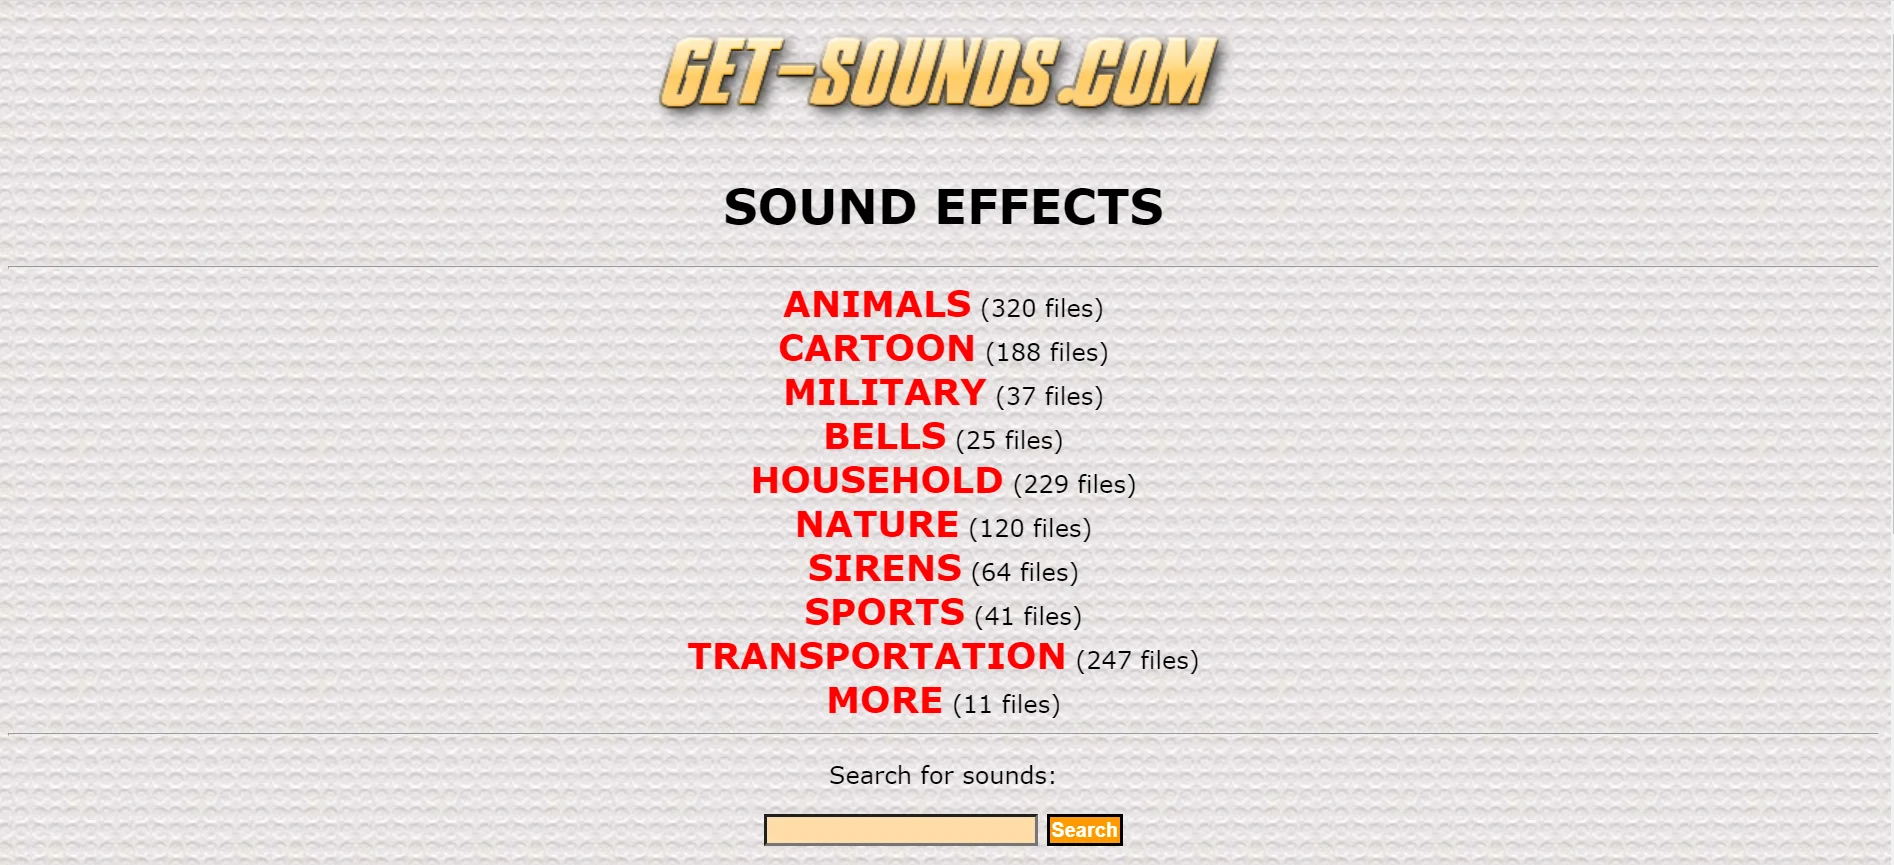 Imagen del sitio principal de Get-Sounds una página web relacionada a audio.